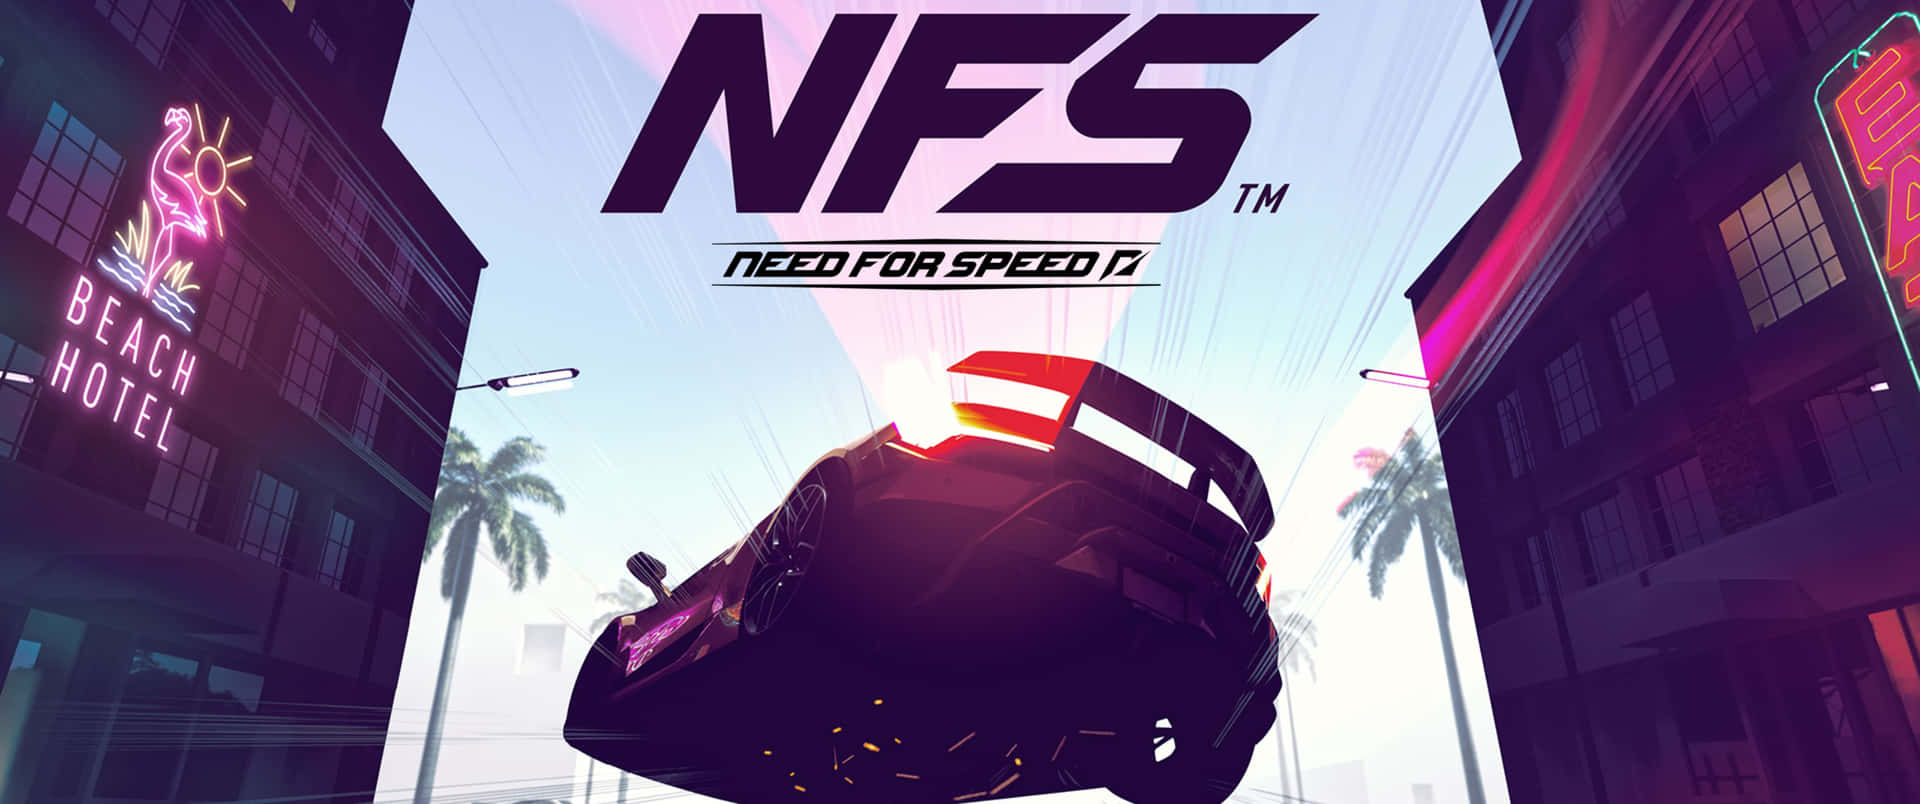 Nfs Speed Racing - Pc - Pc - Pc - Pc - Pc